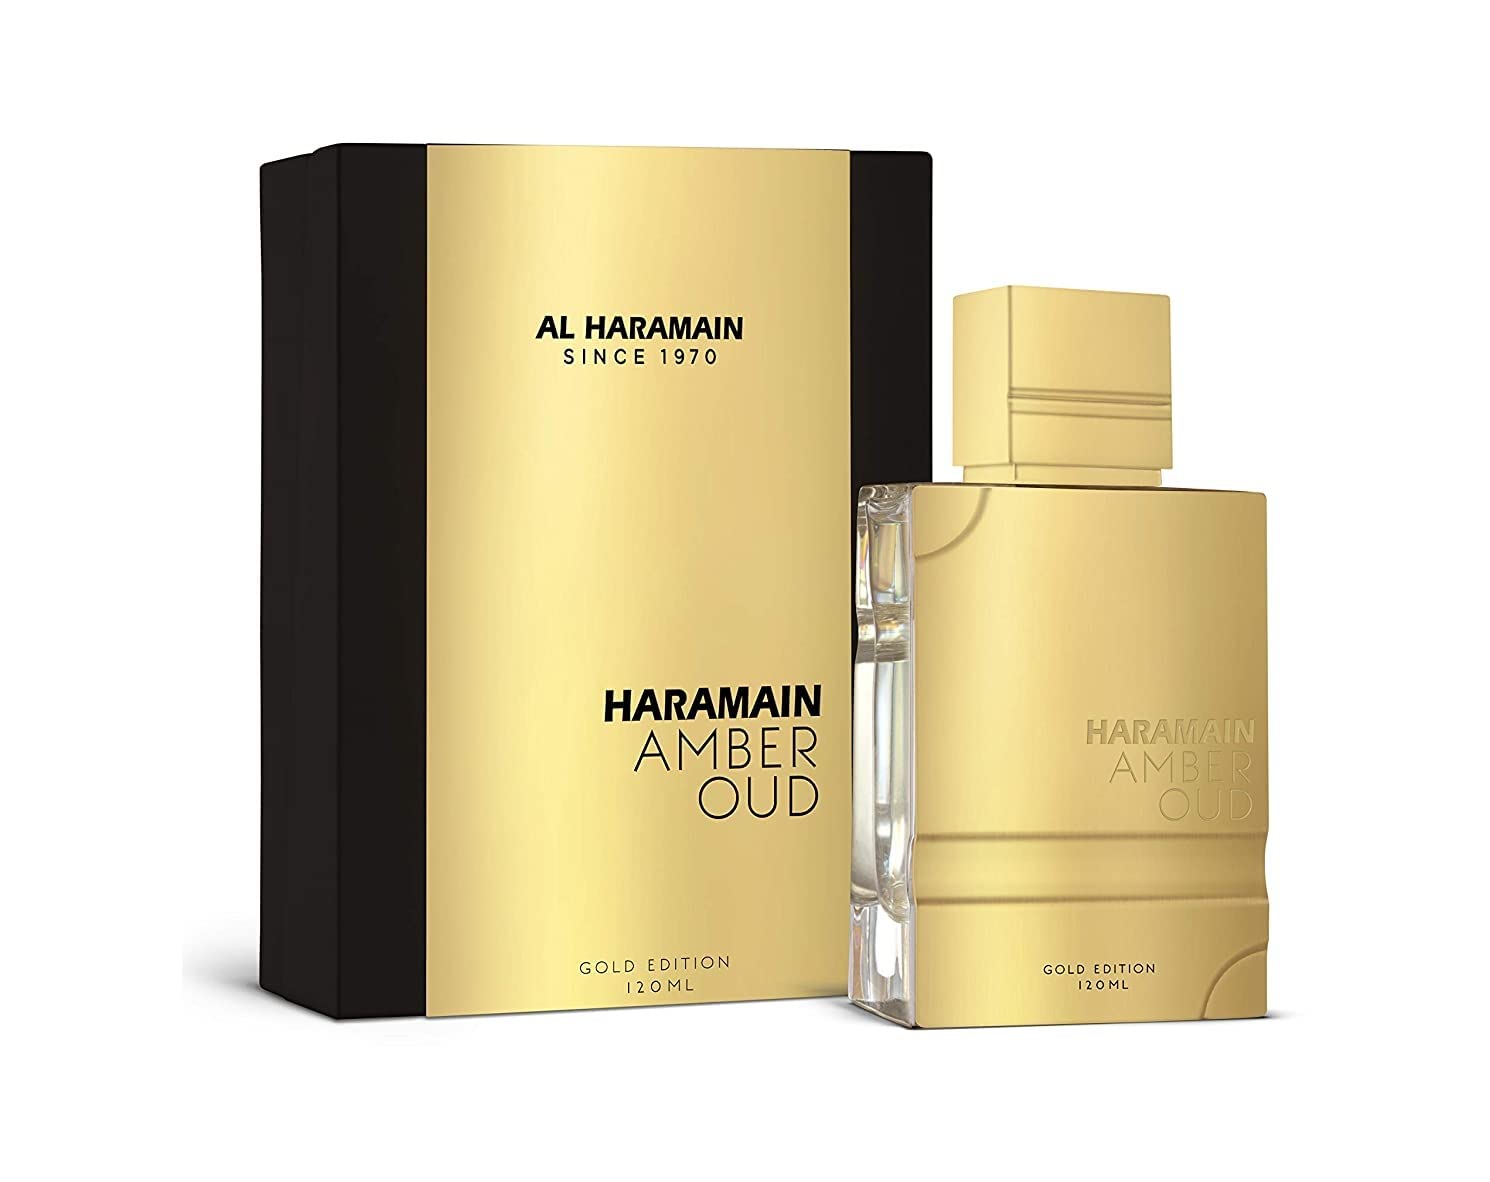 Al Haramain Amber Oud Gold Edition Eau de Parfum Vaporisateur